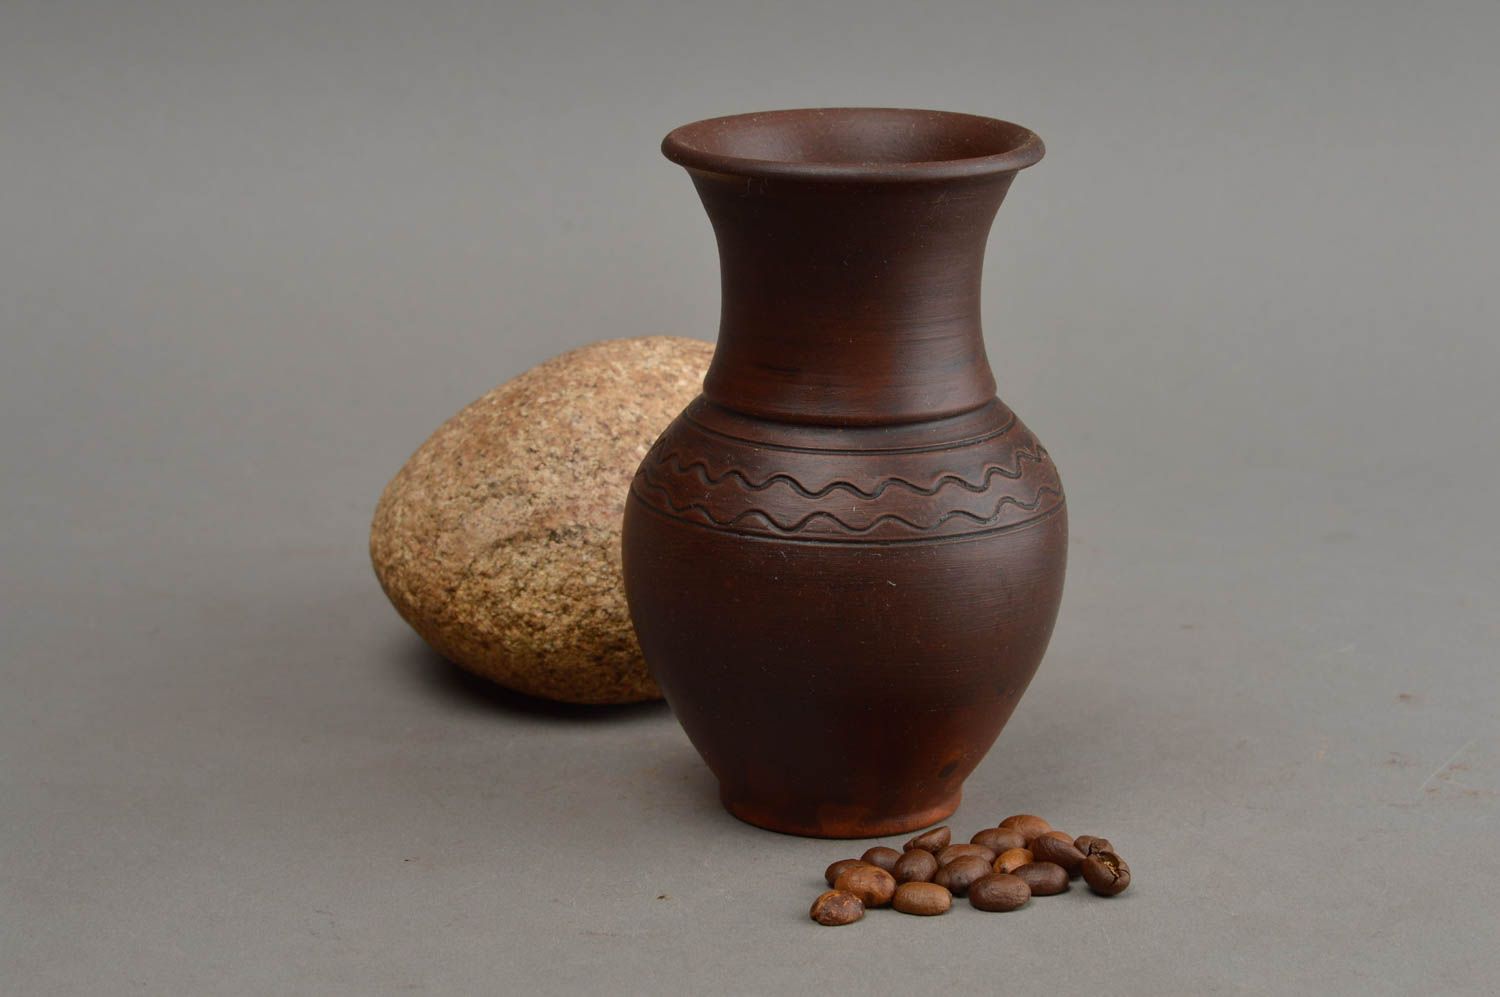 Stilvolle Ethno handgemachte dekorative Vase aus Ton Öko Dekor schön grell toll foto 1